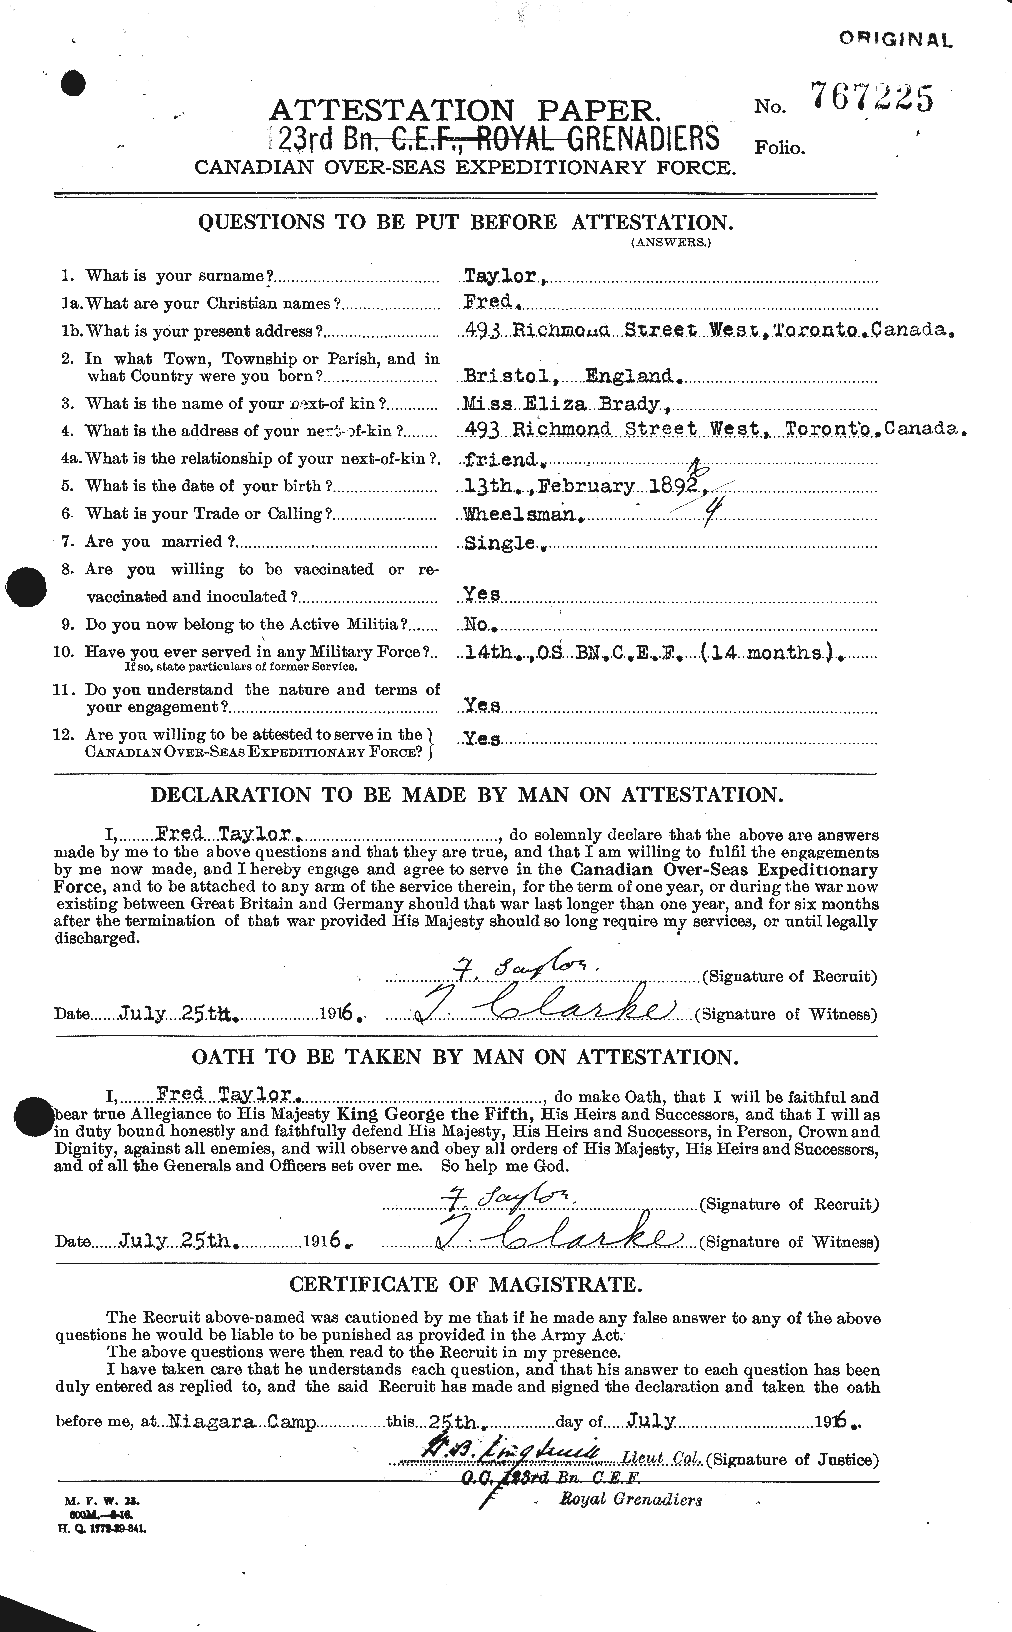 Dossiers du Personnel de la Première Guerre mondiale - CEC 625739a